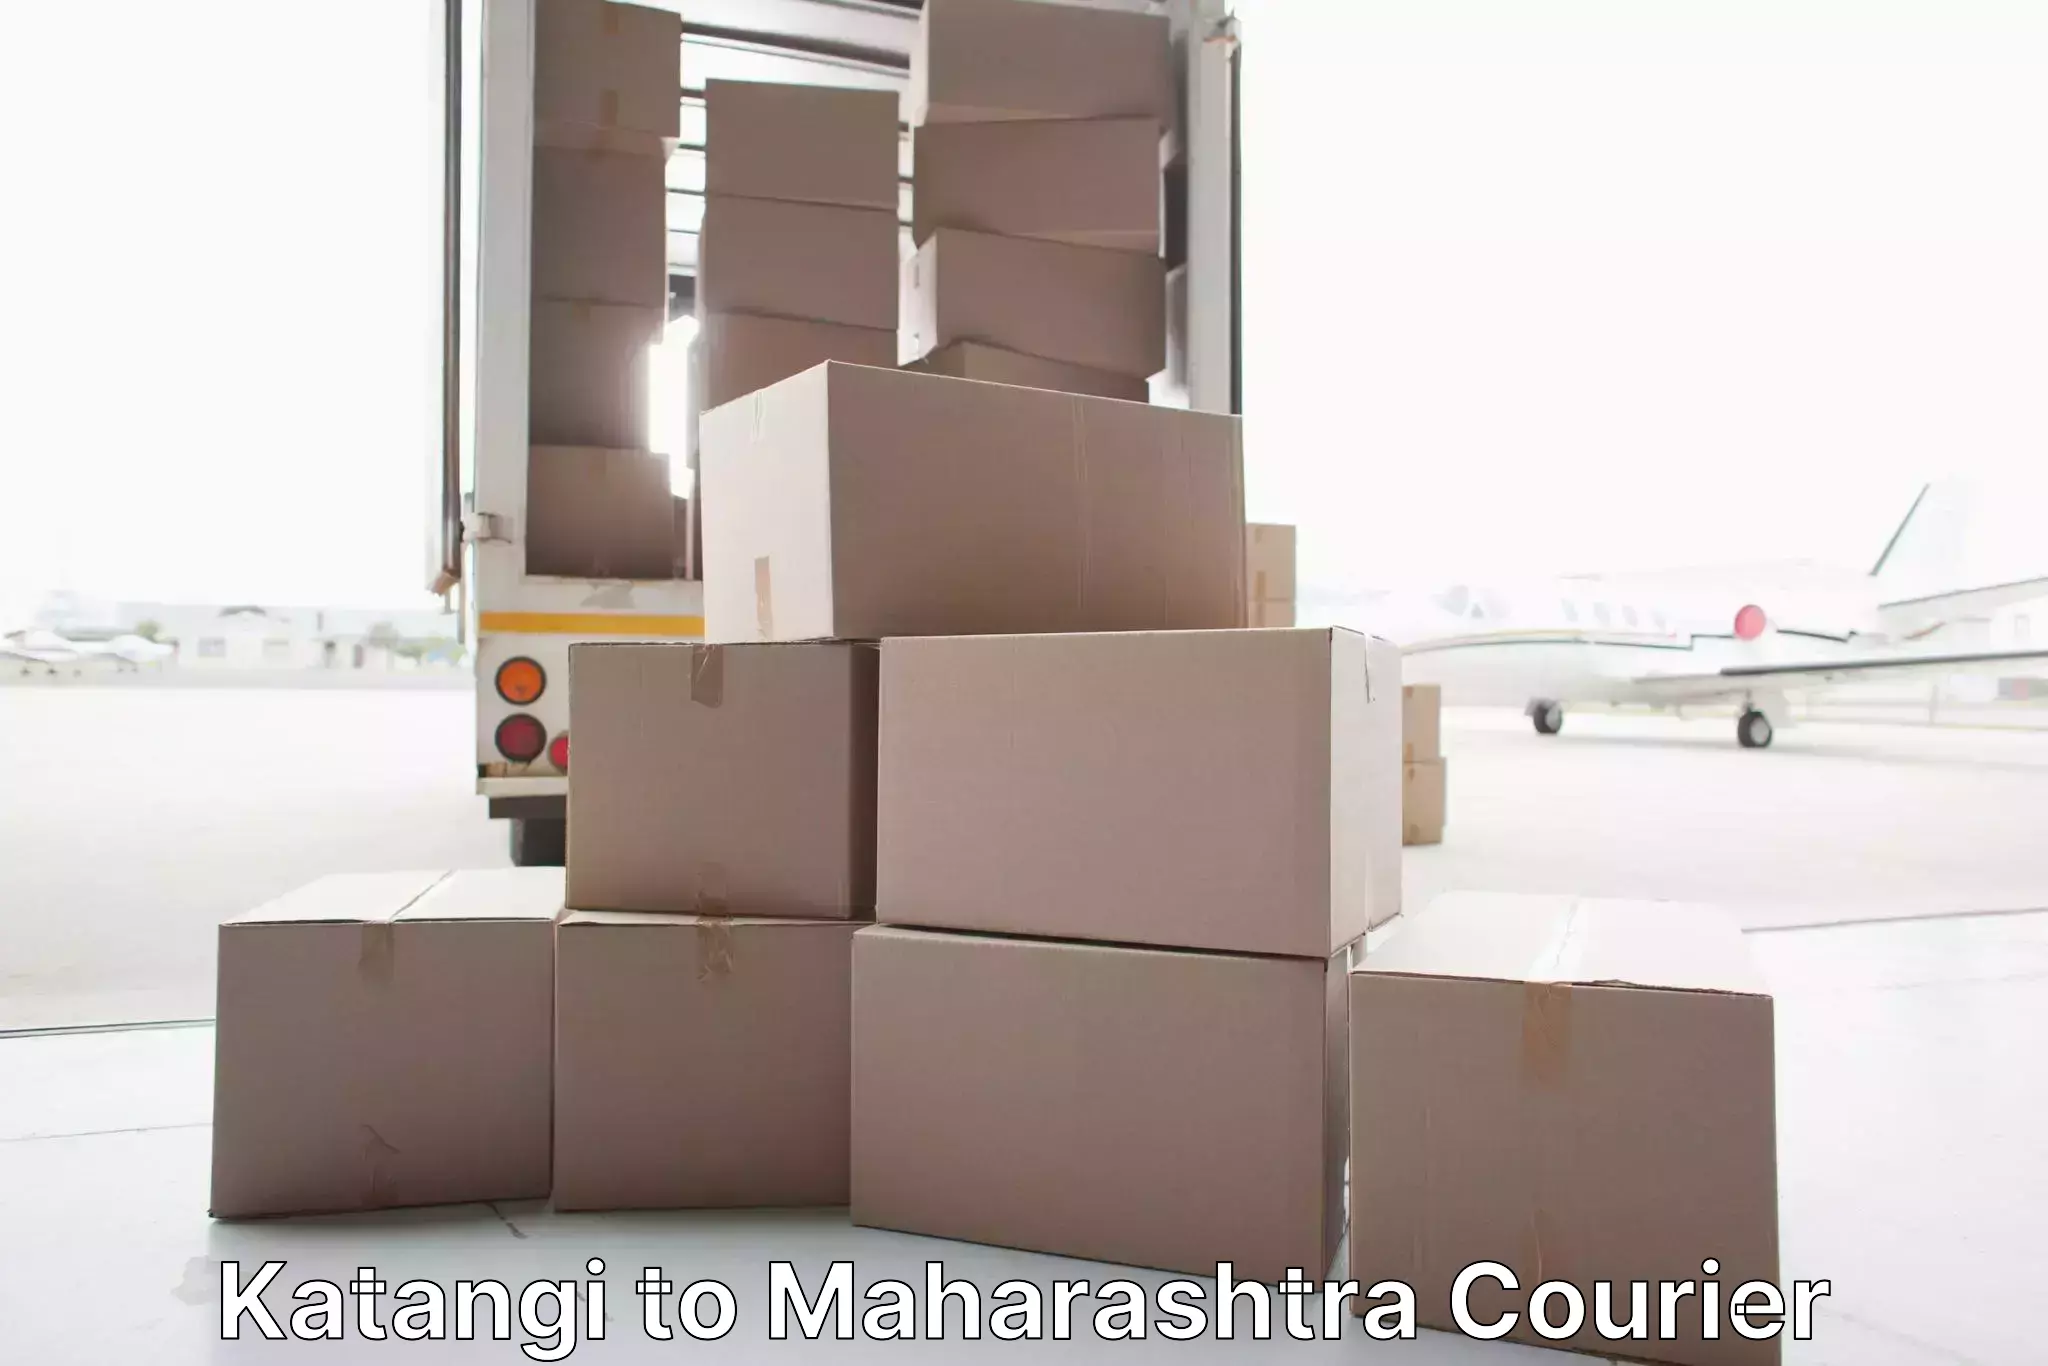 Full-service furniture transport Katangi to Ahmednagar